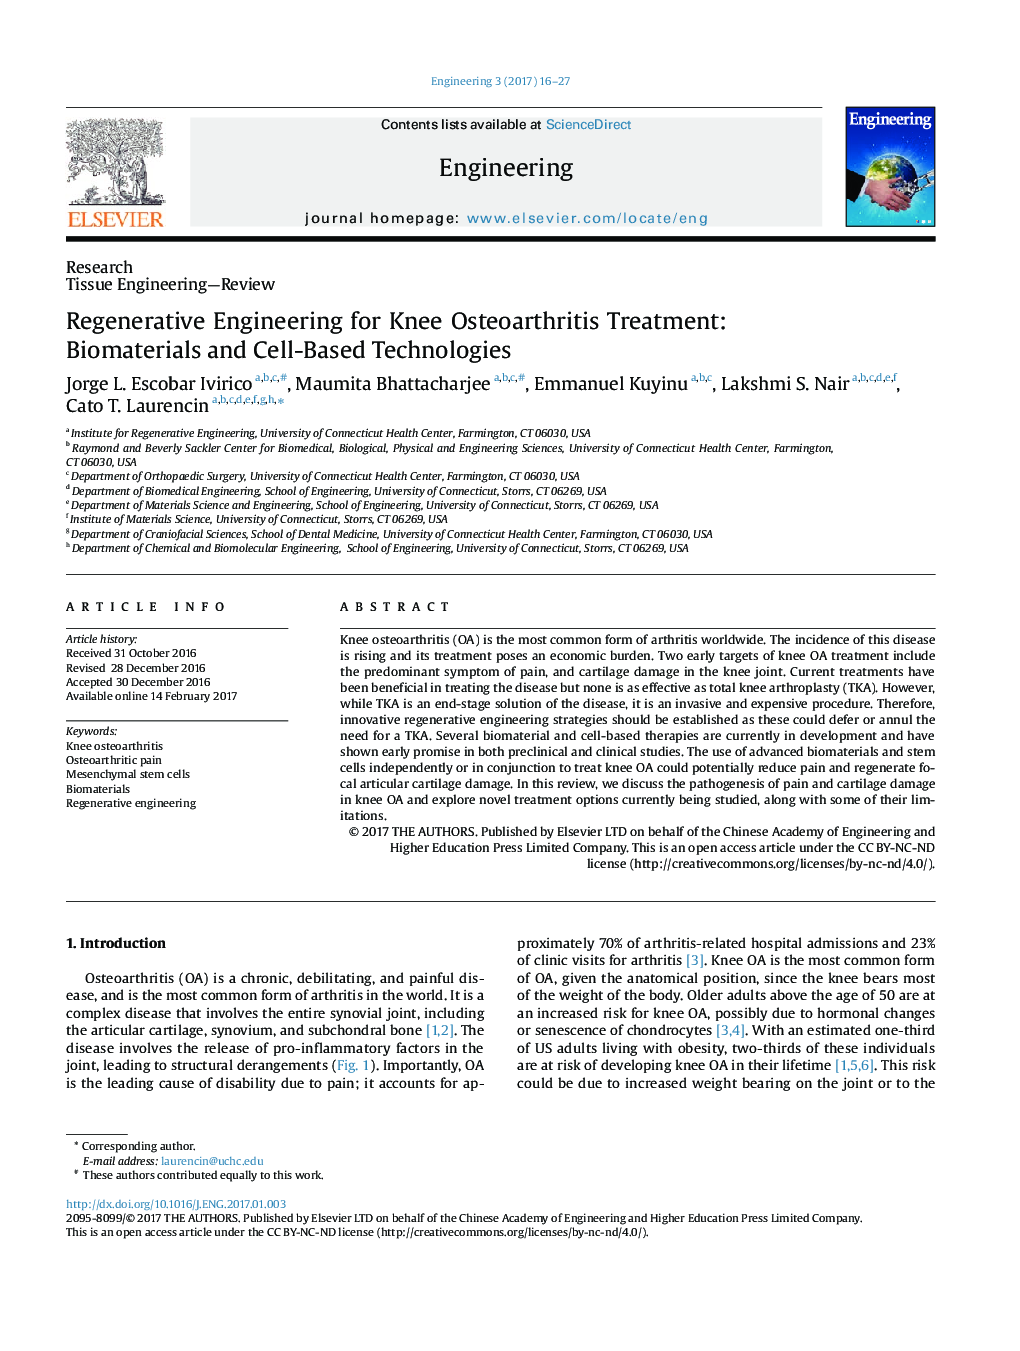 مهندسی بازسازی برای درمان استئو آرتریت زانو: مواد بیولوژیکی و فن آوری های مبتنی بر سلول 